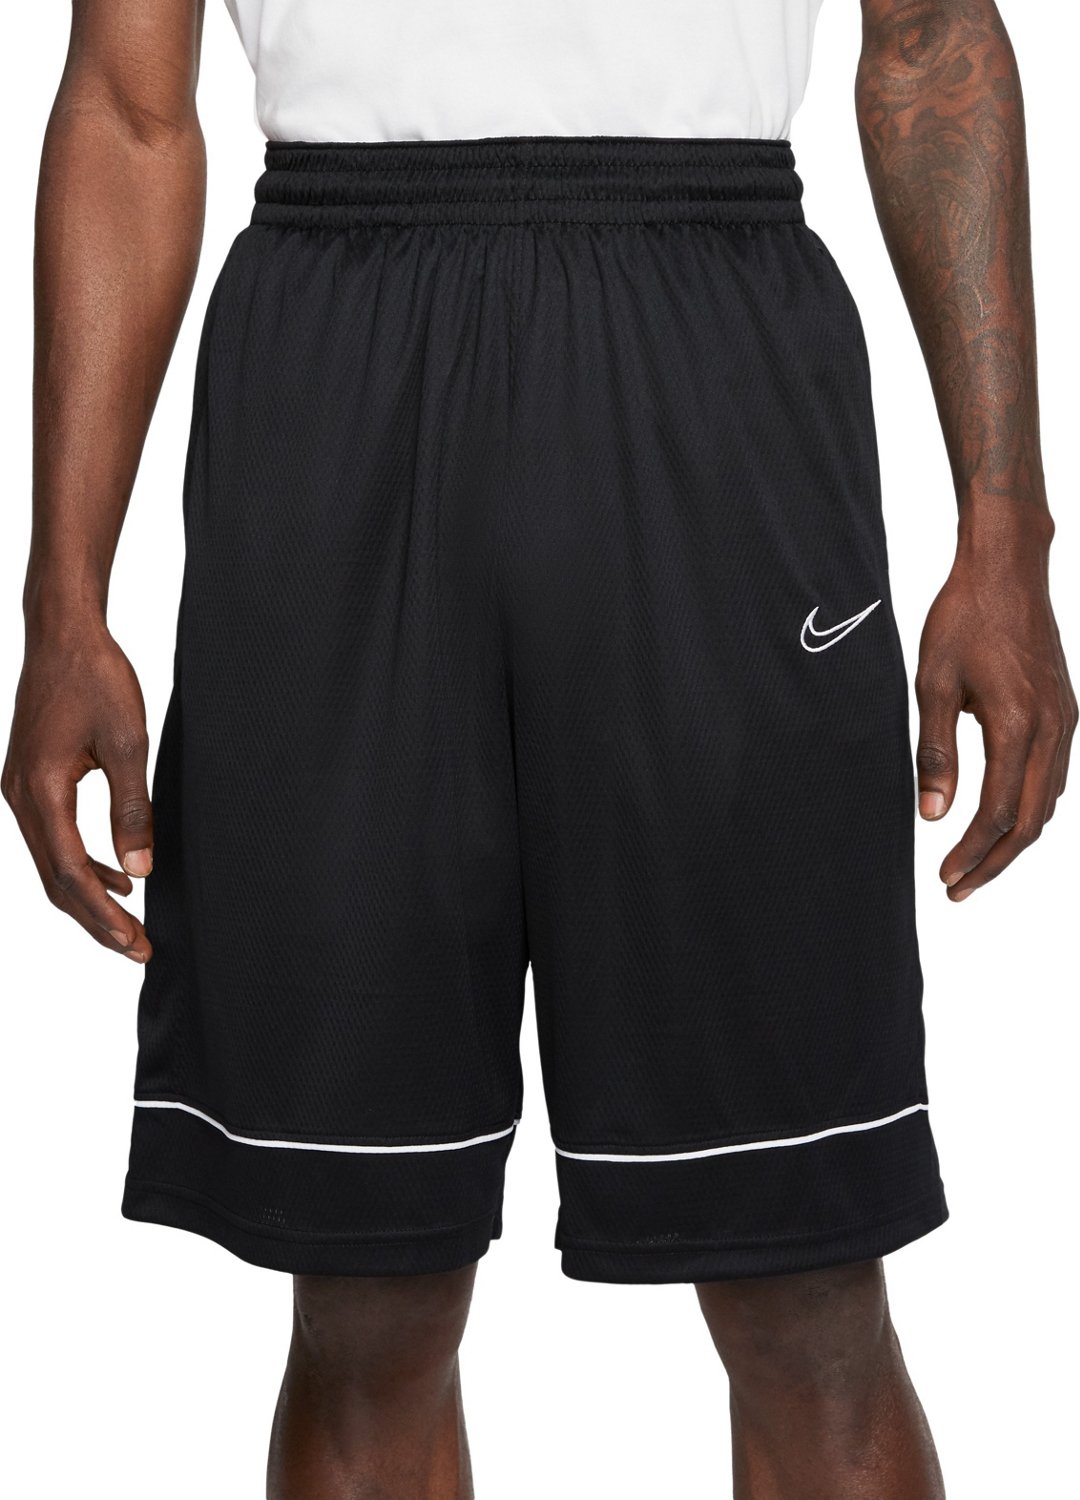 nike men's fastbreak basketball shorts